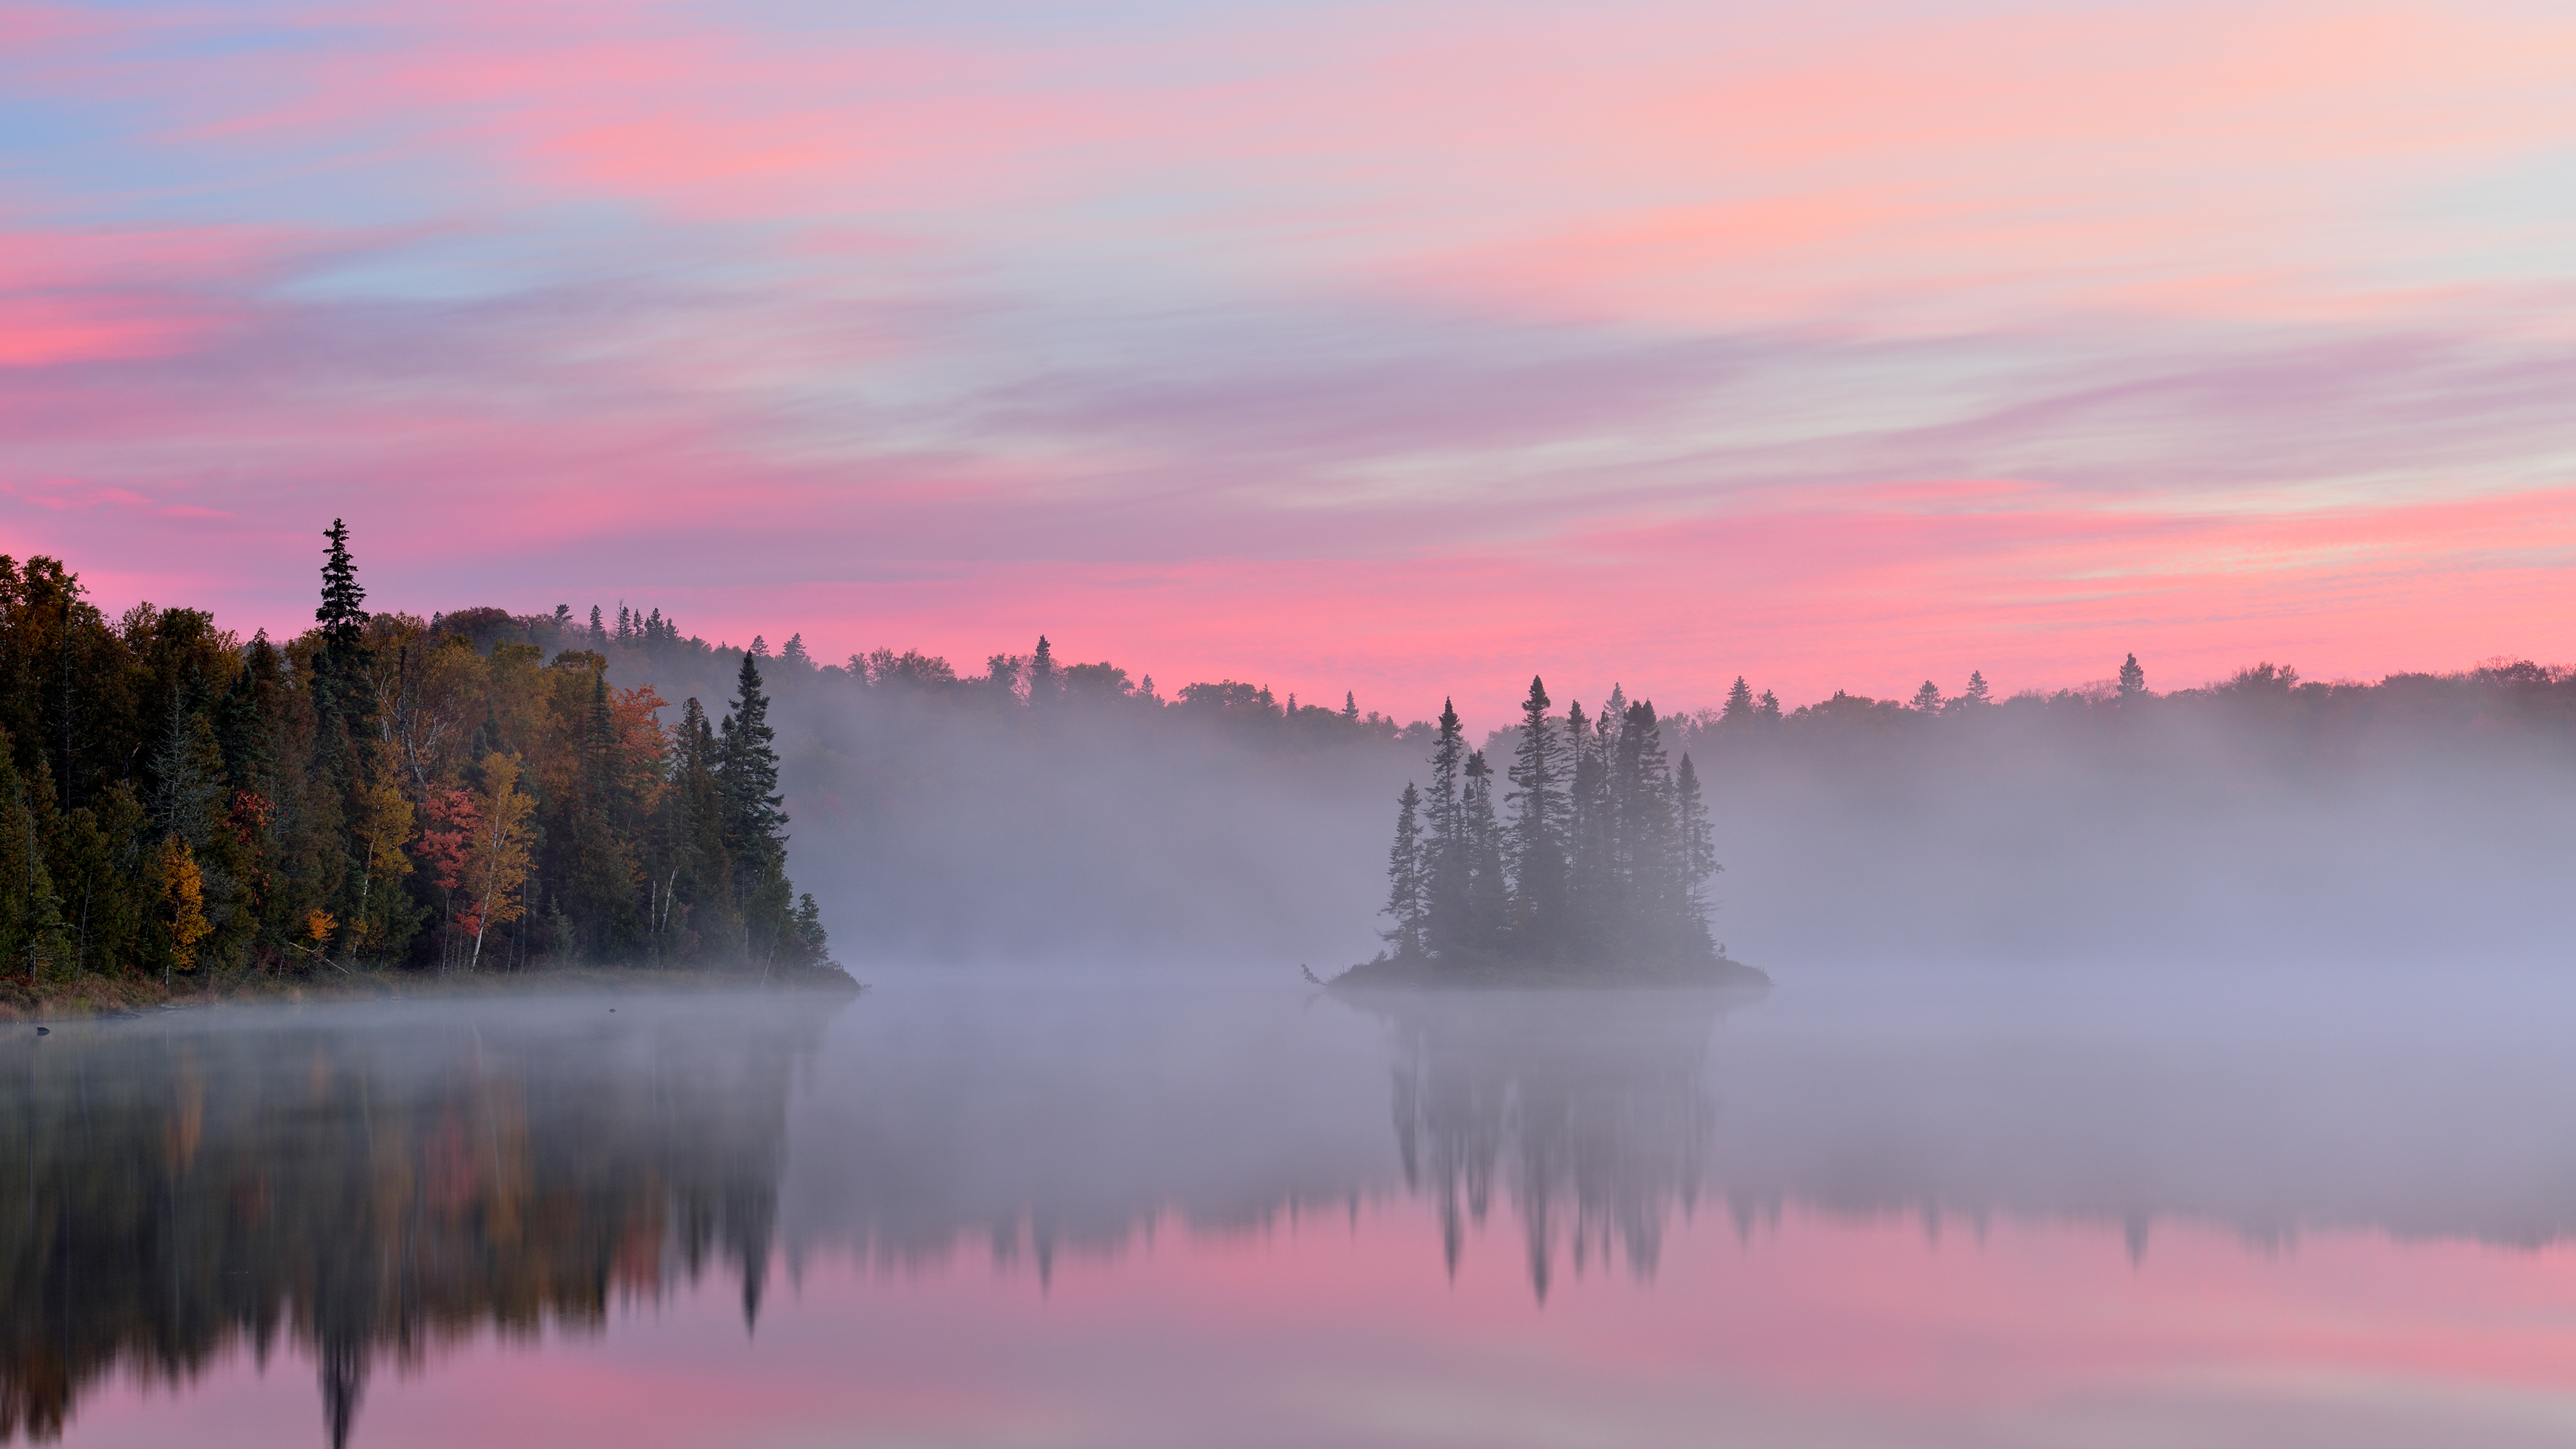 Kenny Lake at dawn, Lake Superior Provincial Park, Ontario, Canada by Don Johnston